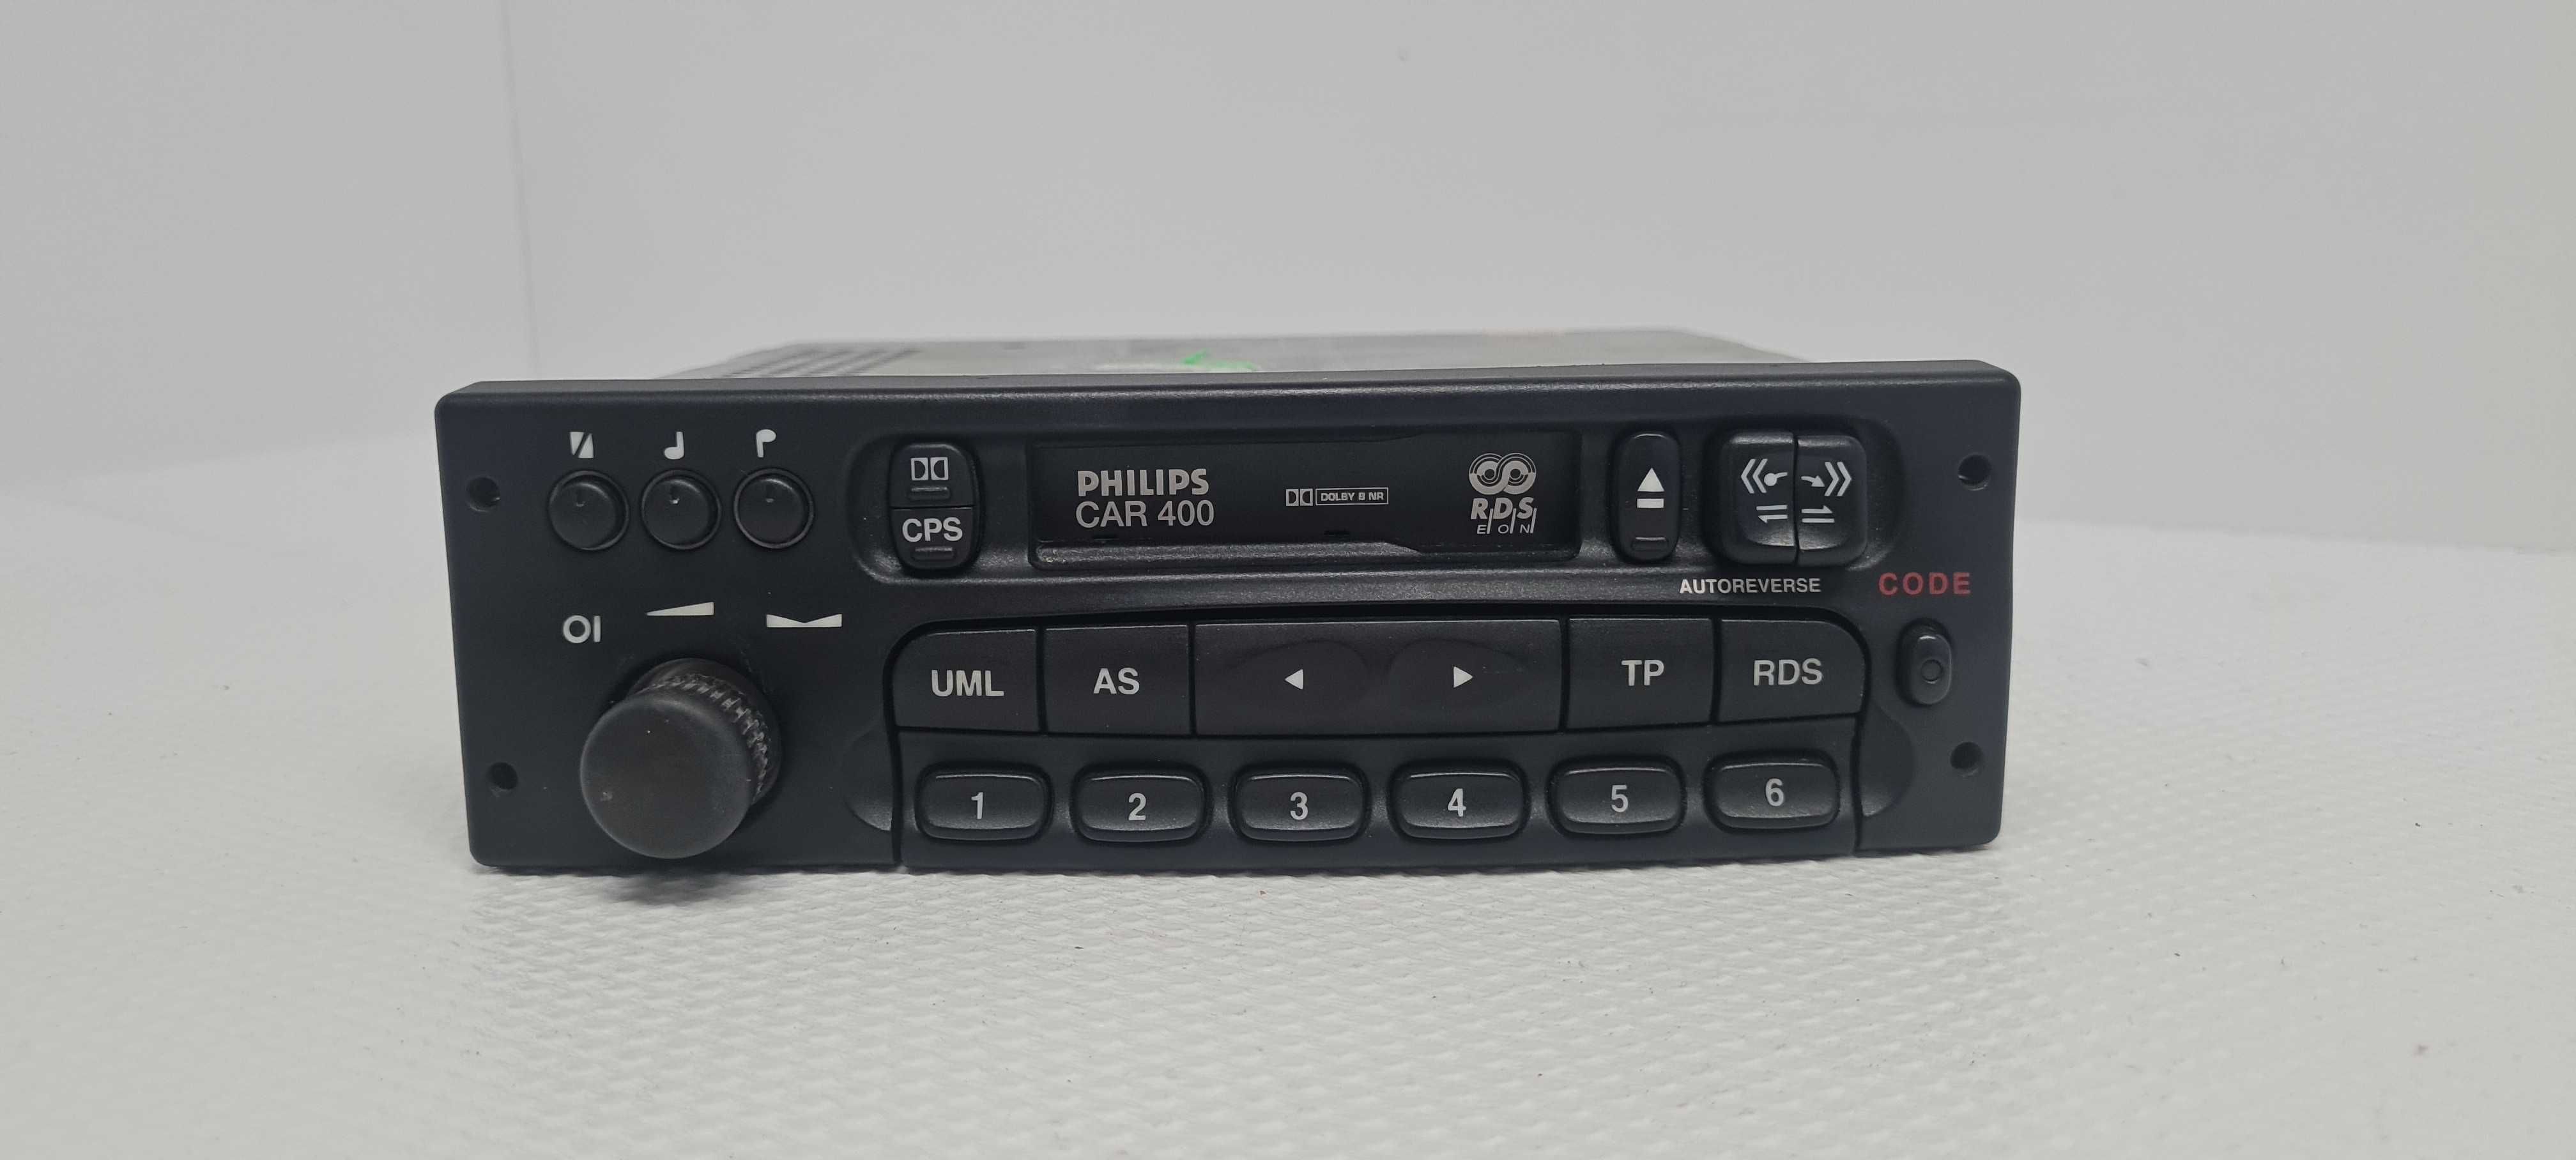 Opel Astra Vectra Corsa Car400 Radio kaseta 9051---2304 Odblokowane